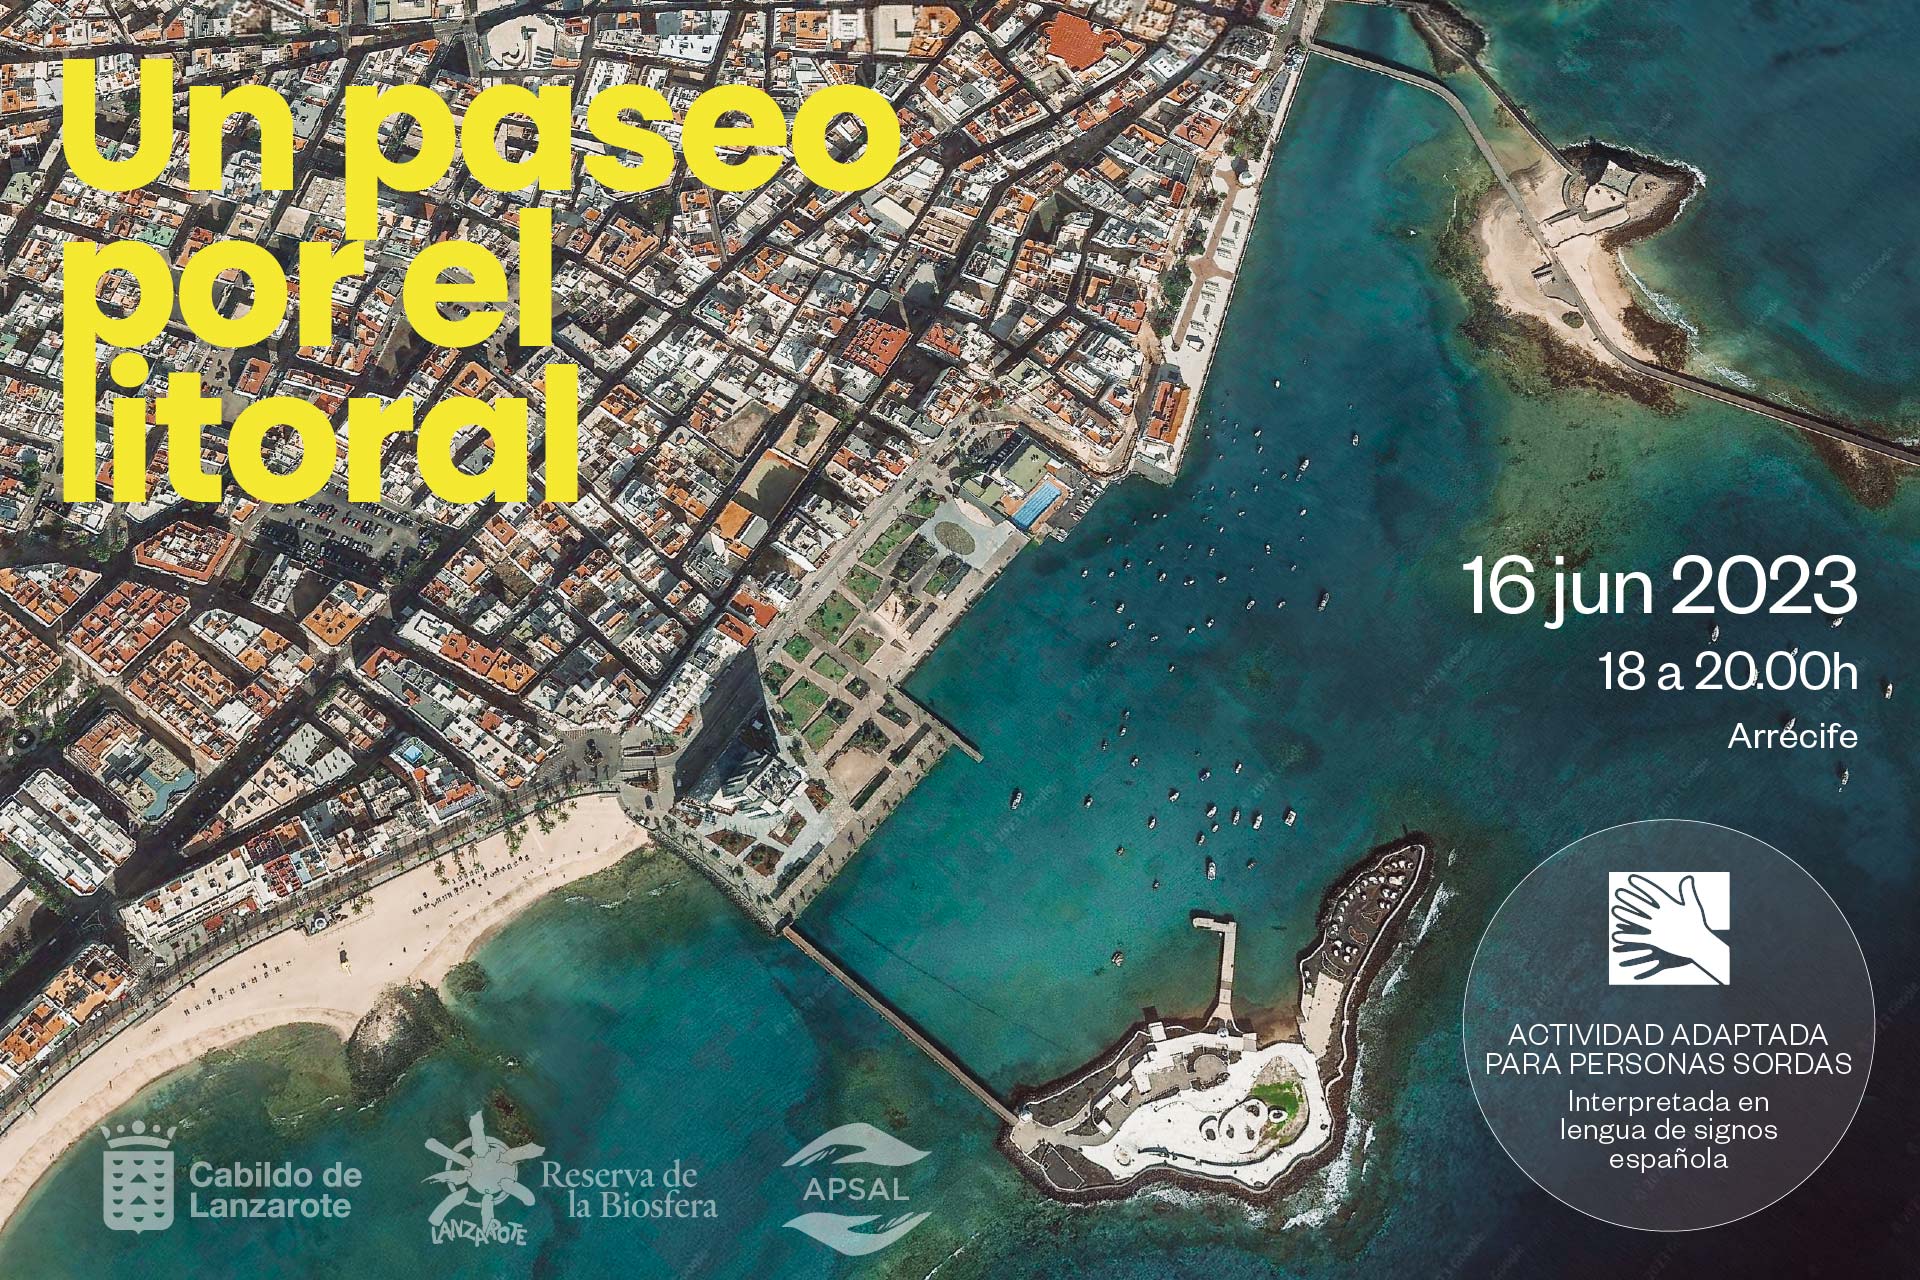 Paseo por el litoral de La Marina de Arrecife por el 30º aniversario de Lanzarote como Reserva de la Biosfera